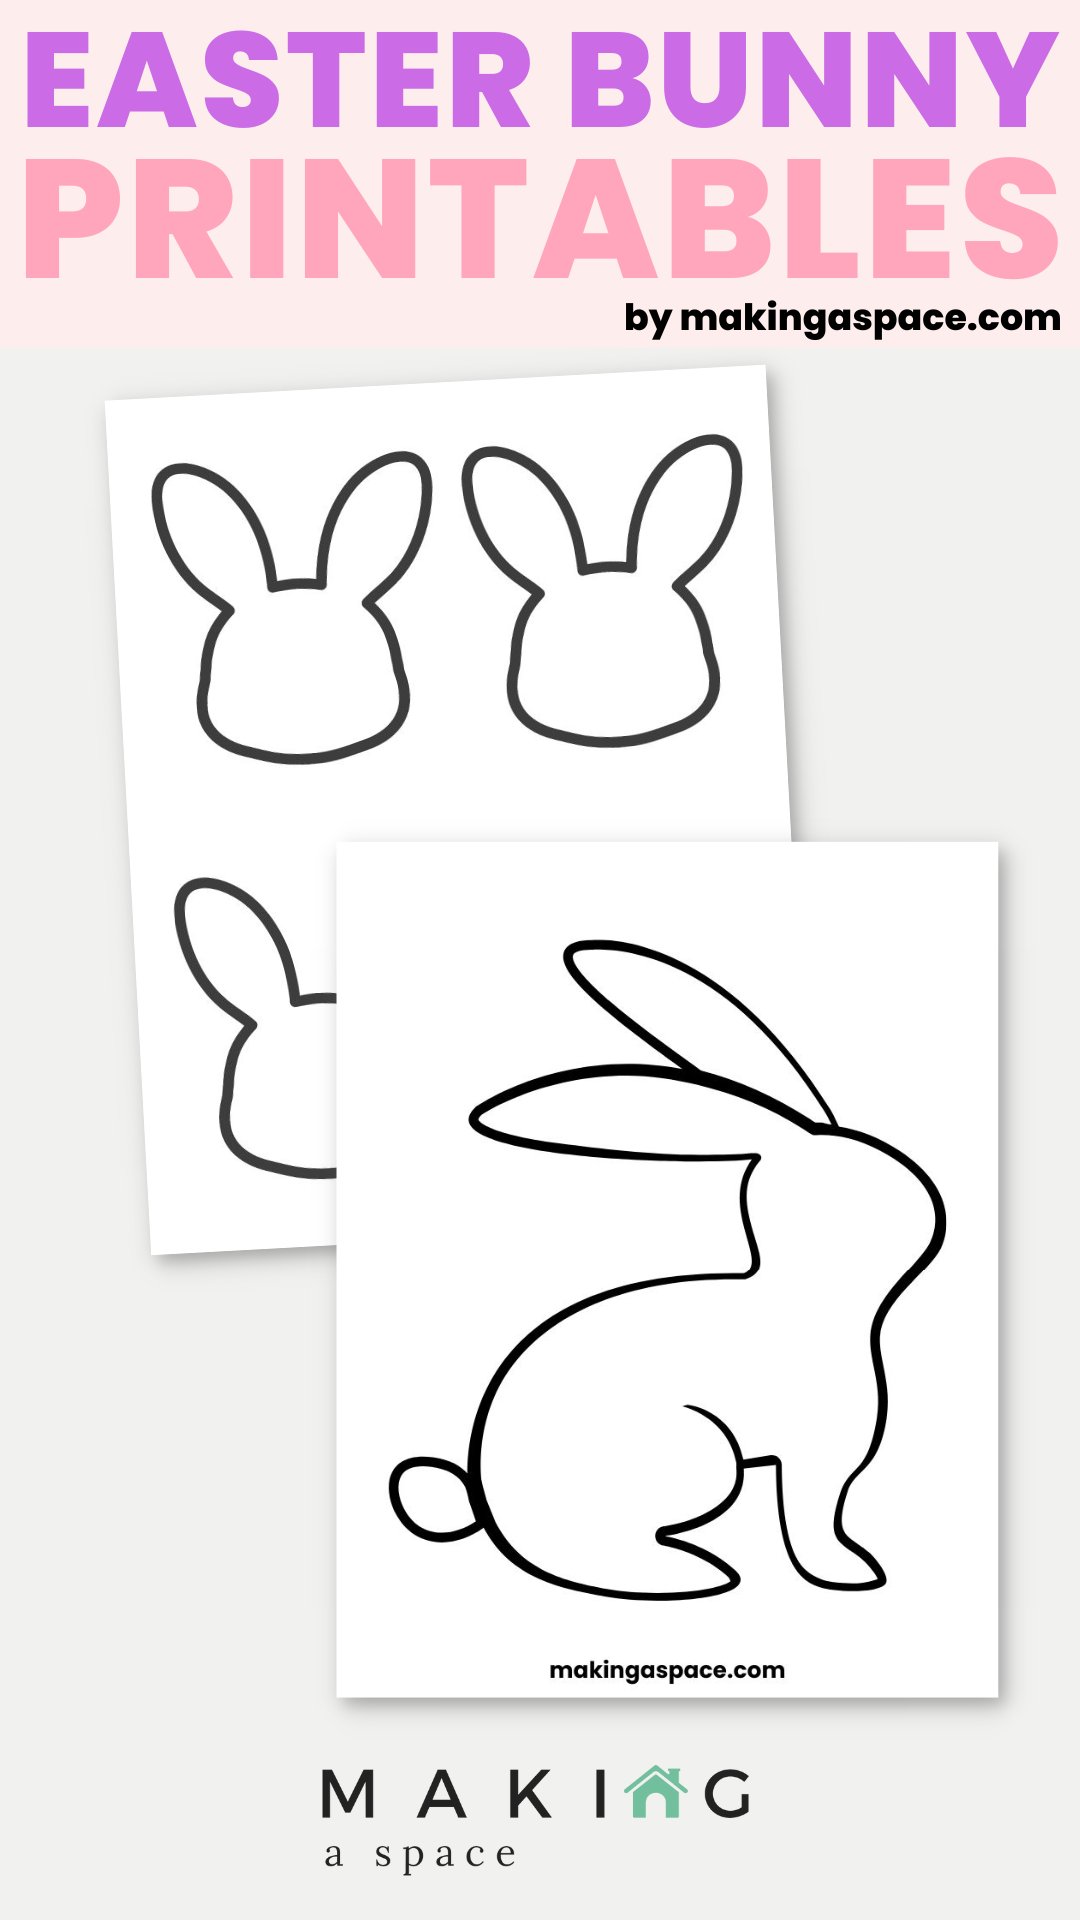 printable easter bunny templates